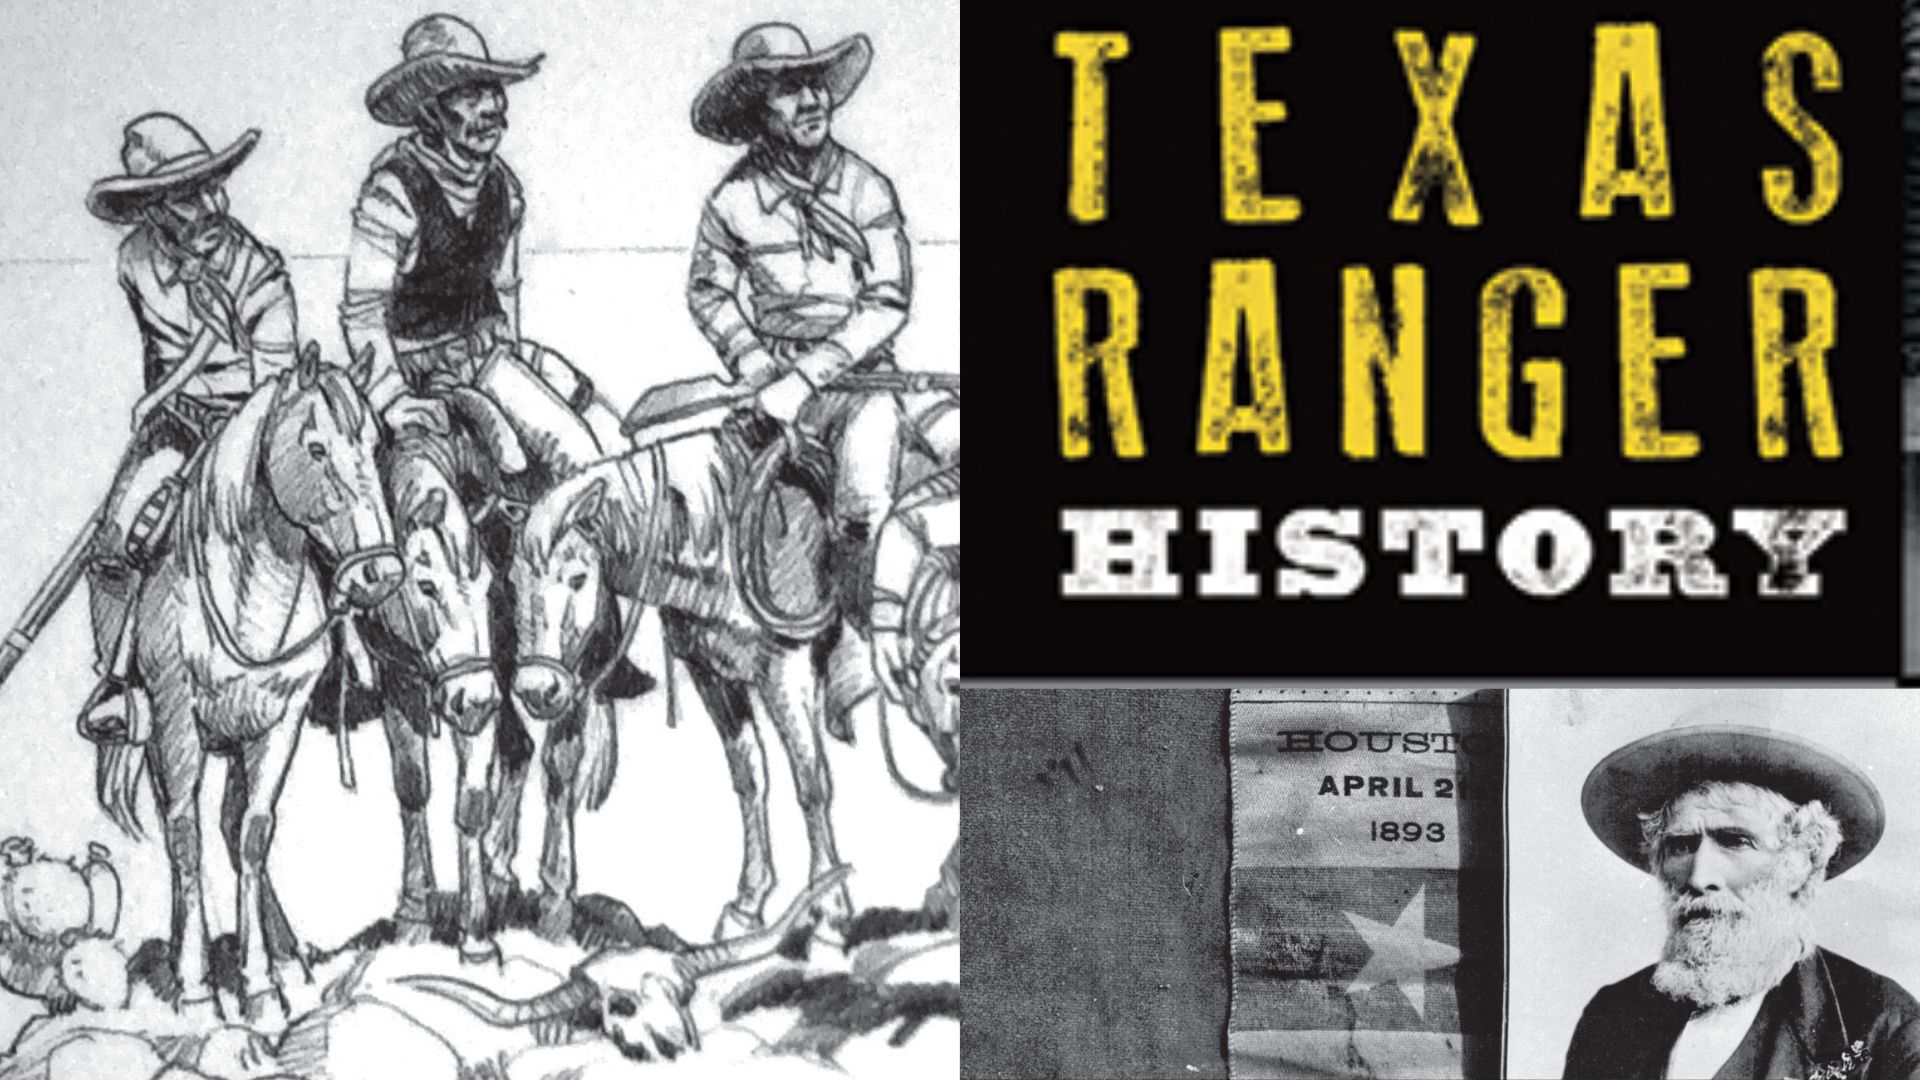 Texas Rangers, History, Summary, & Facts